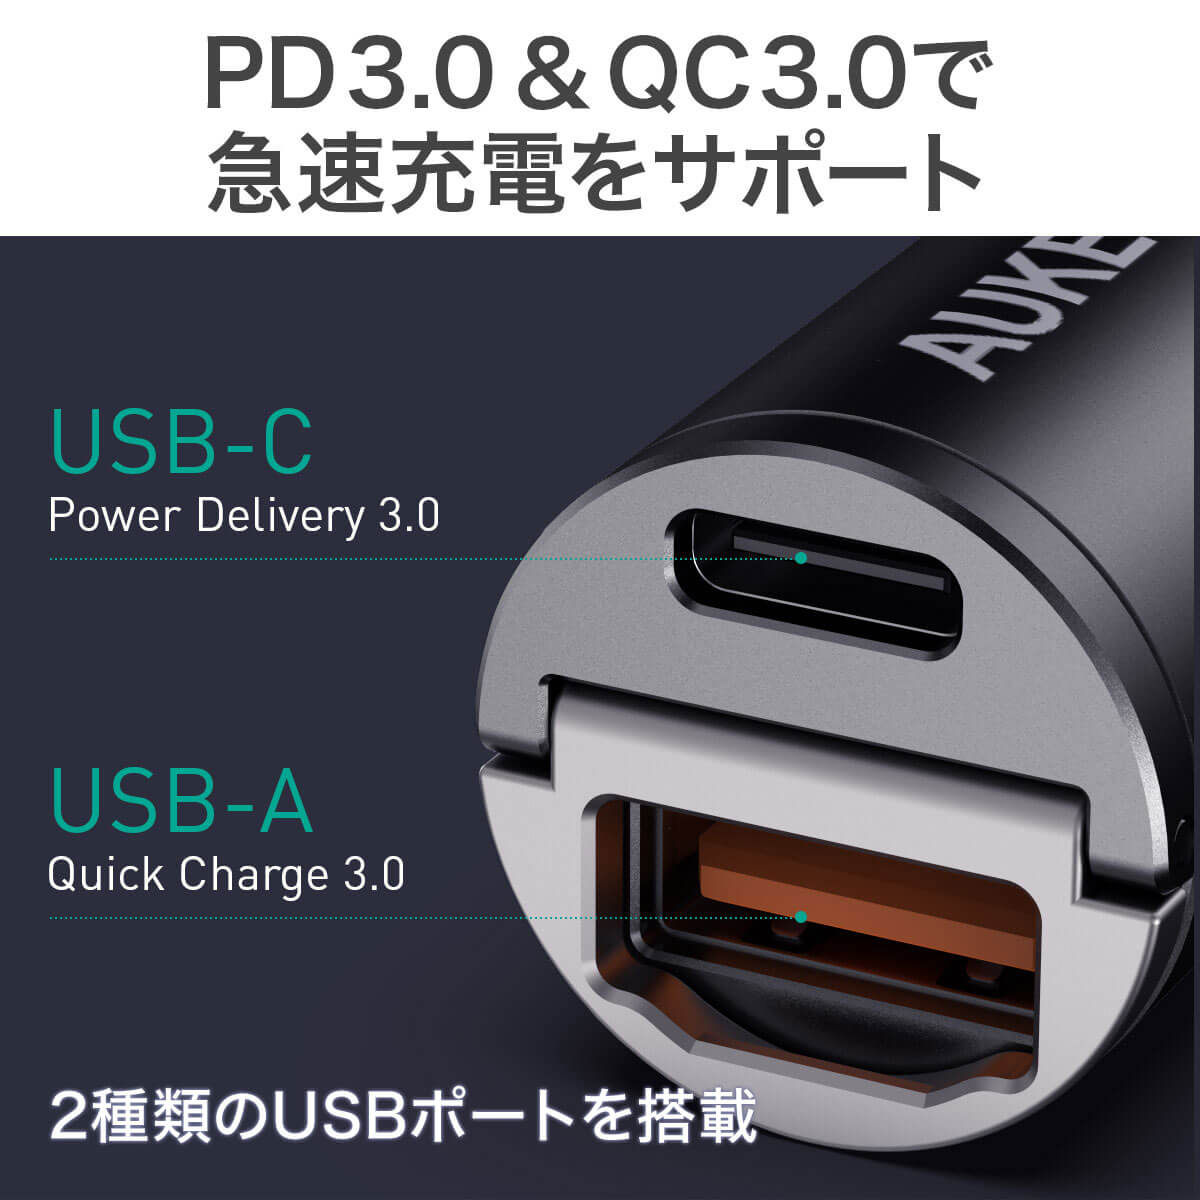 AUKEY CC-A3-BK シガーソケット USB 充電器 AUKEY オーキー Nano Series 30W ブラック スマホ iPhone  Android カーチャージャー 充電 小さい コンパクト 軽量 スリム 出っ張らない PD3.0 QC3.0 2ポート 2年保証  MikimotoBeans Store